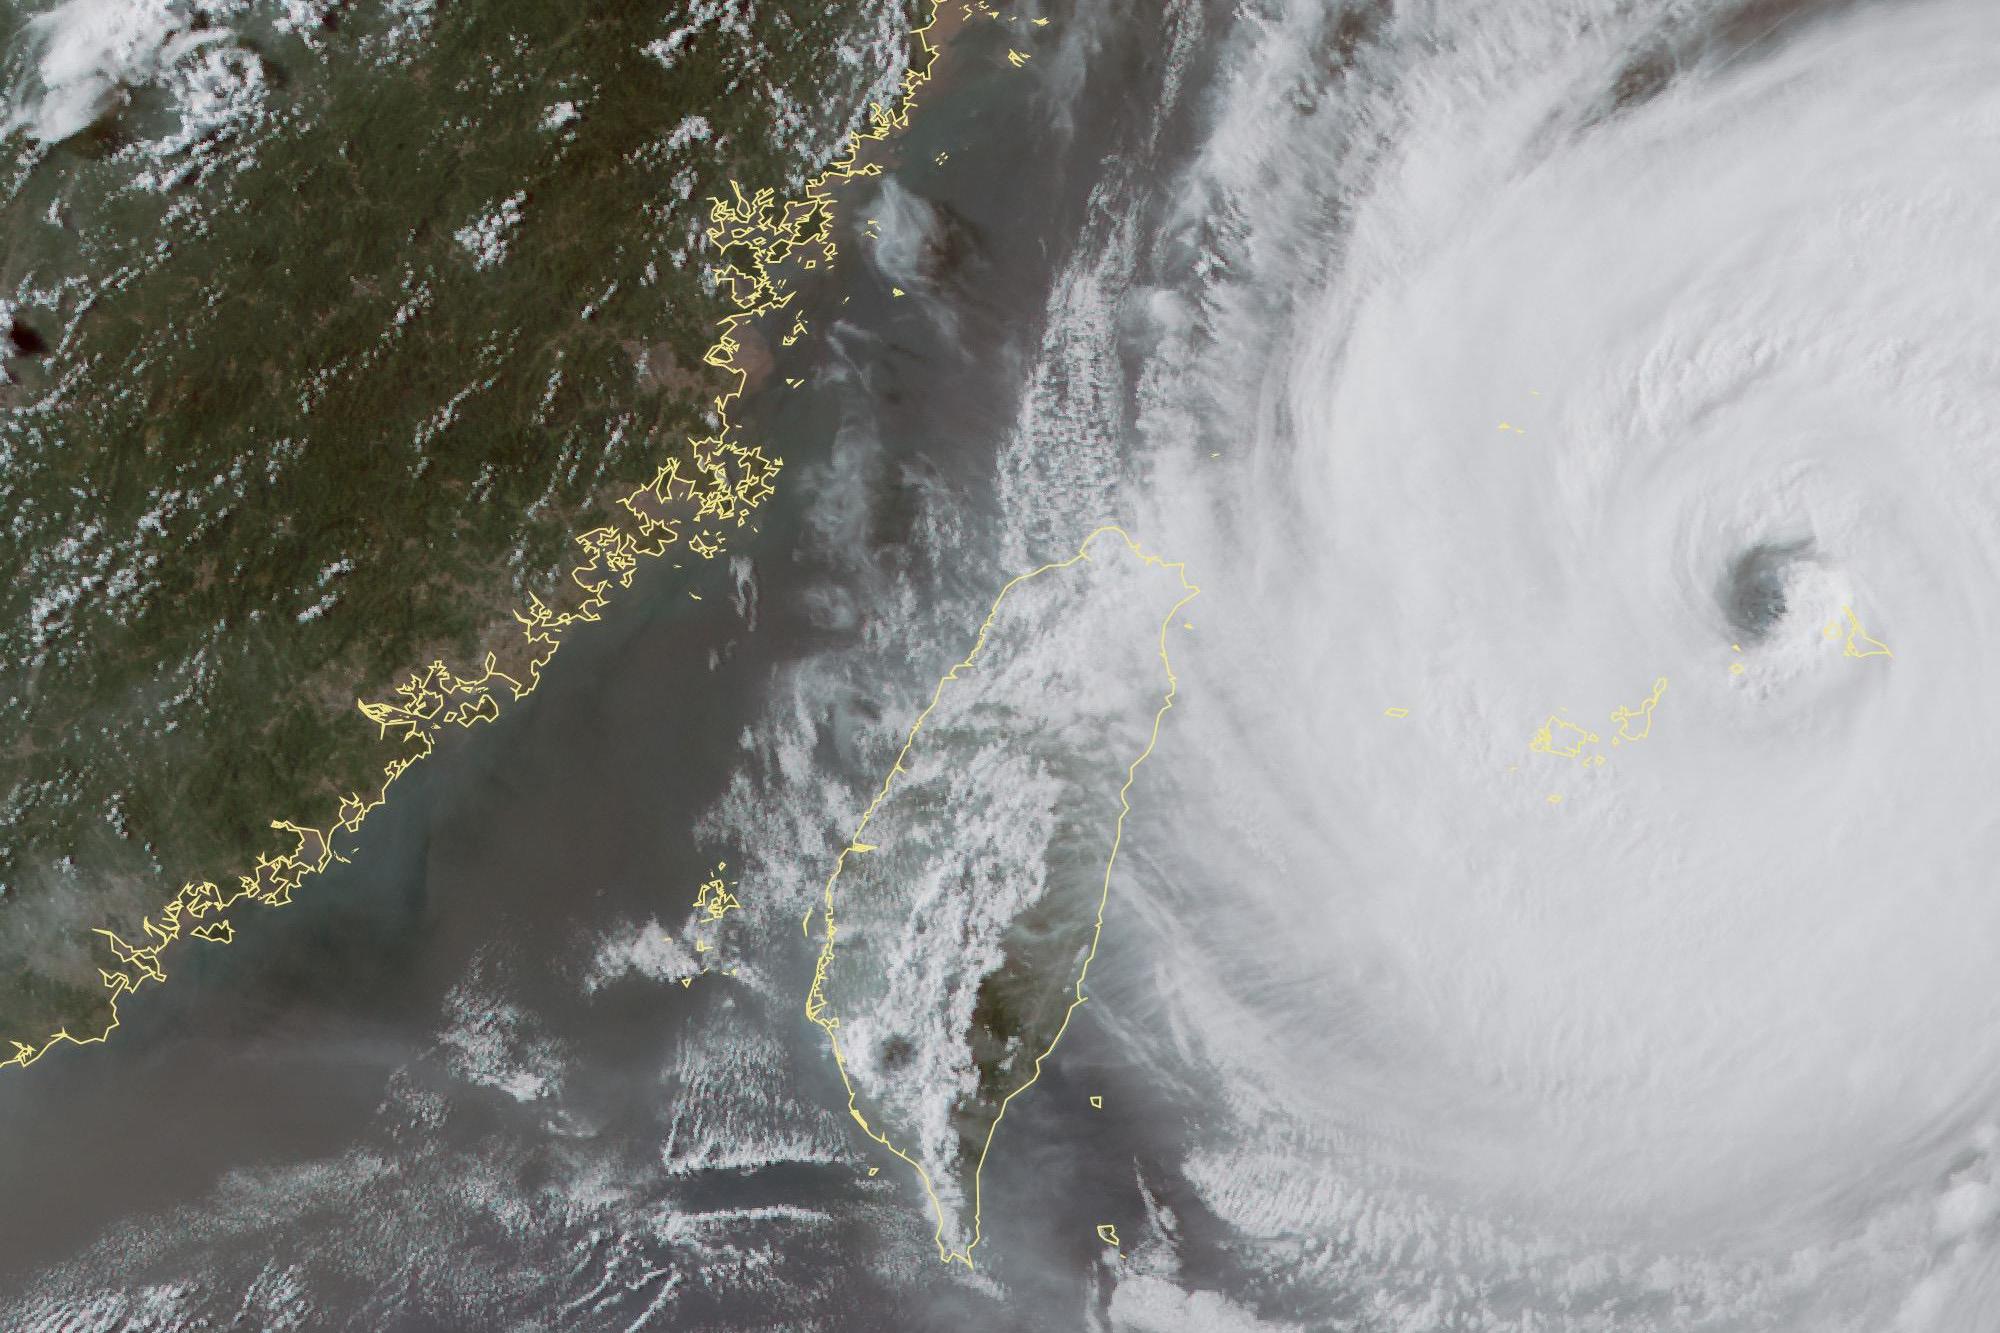 台风玛利亚图片